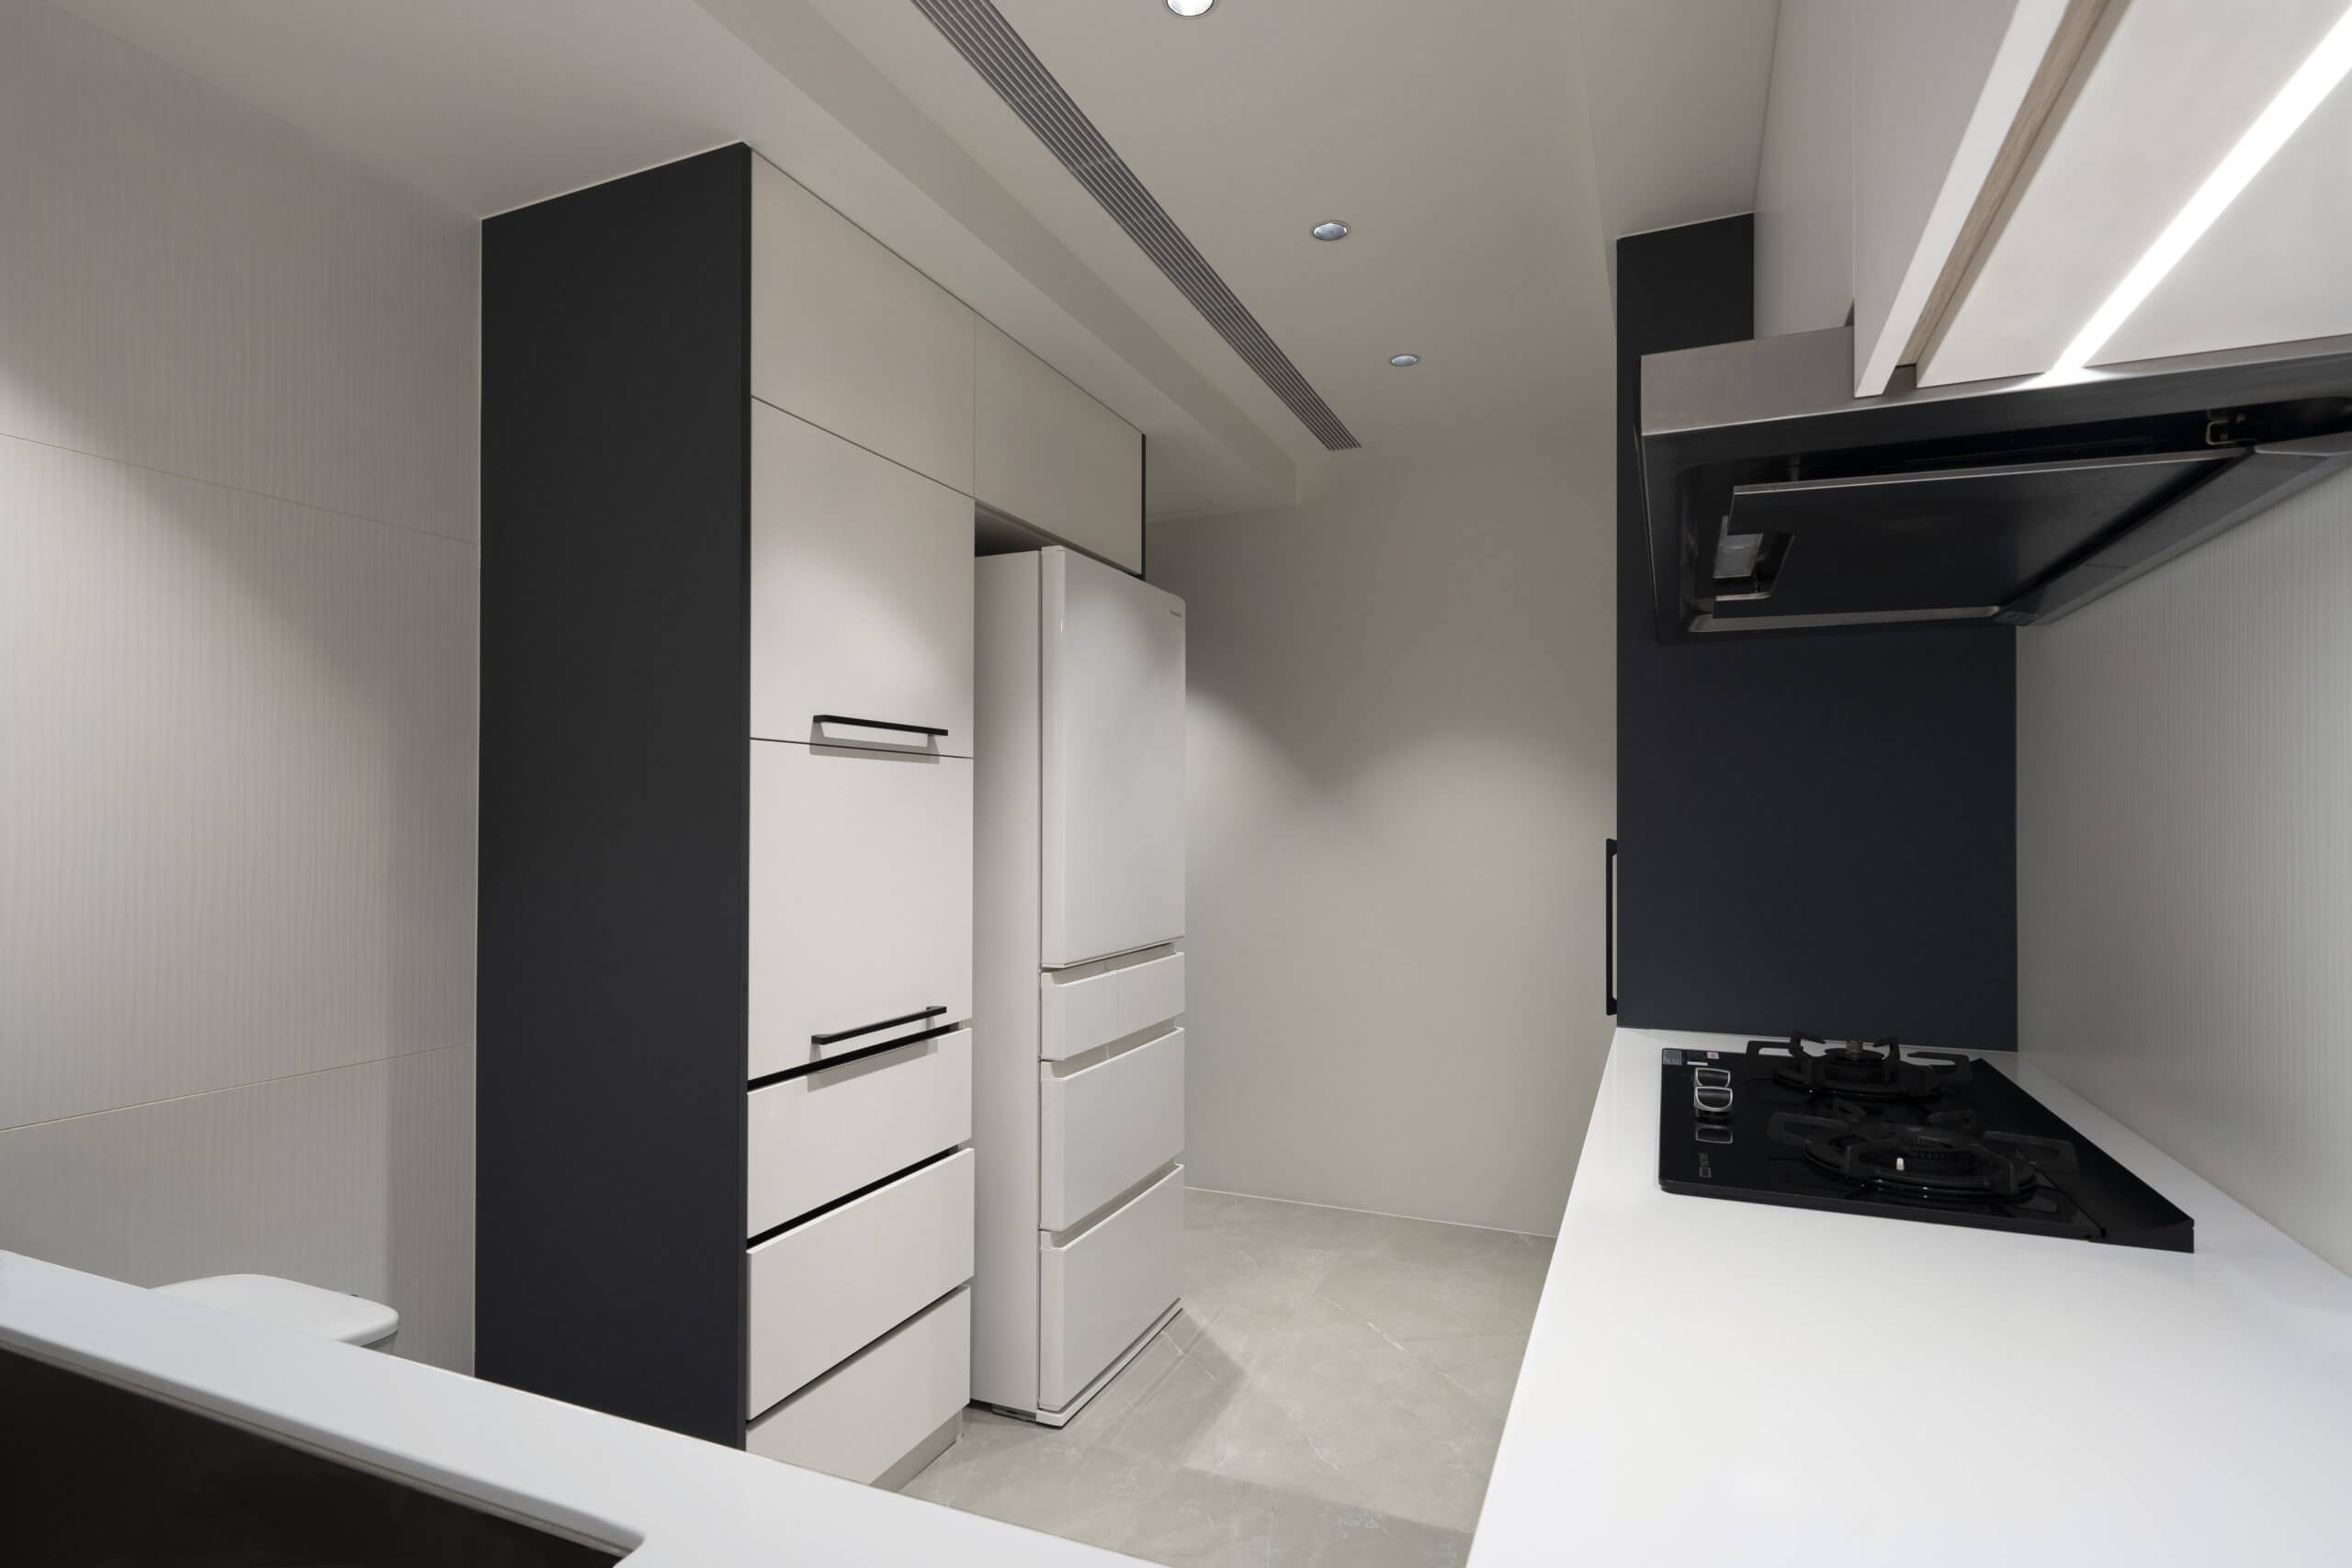 Nhà bếp kiểu dáng đẹp với tủ gỗ màu trắng titan mờ mượt, tay cầm màu đen và thiết kế tối giản.